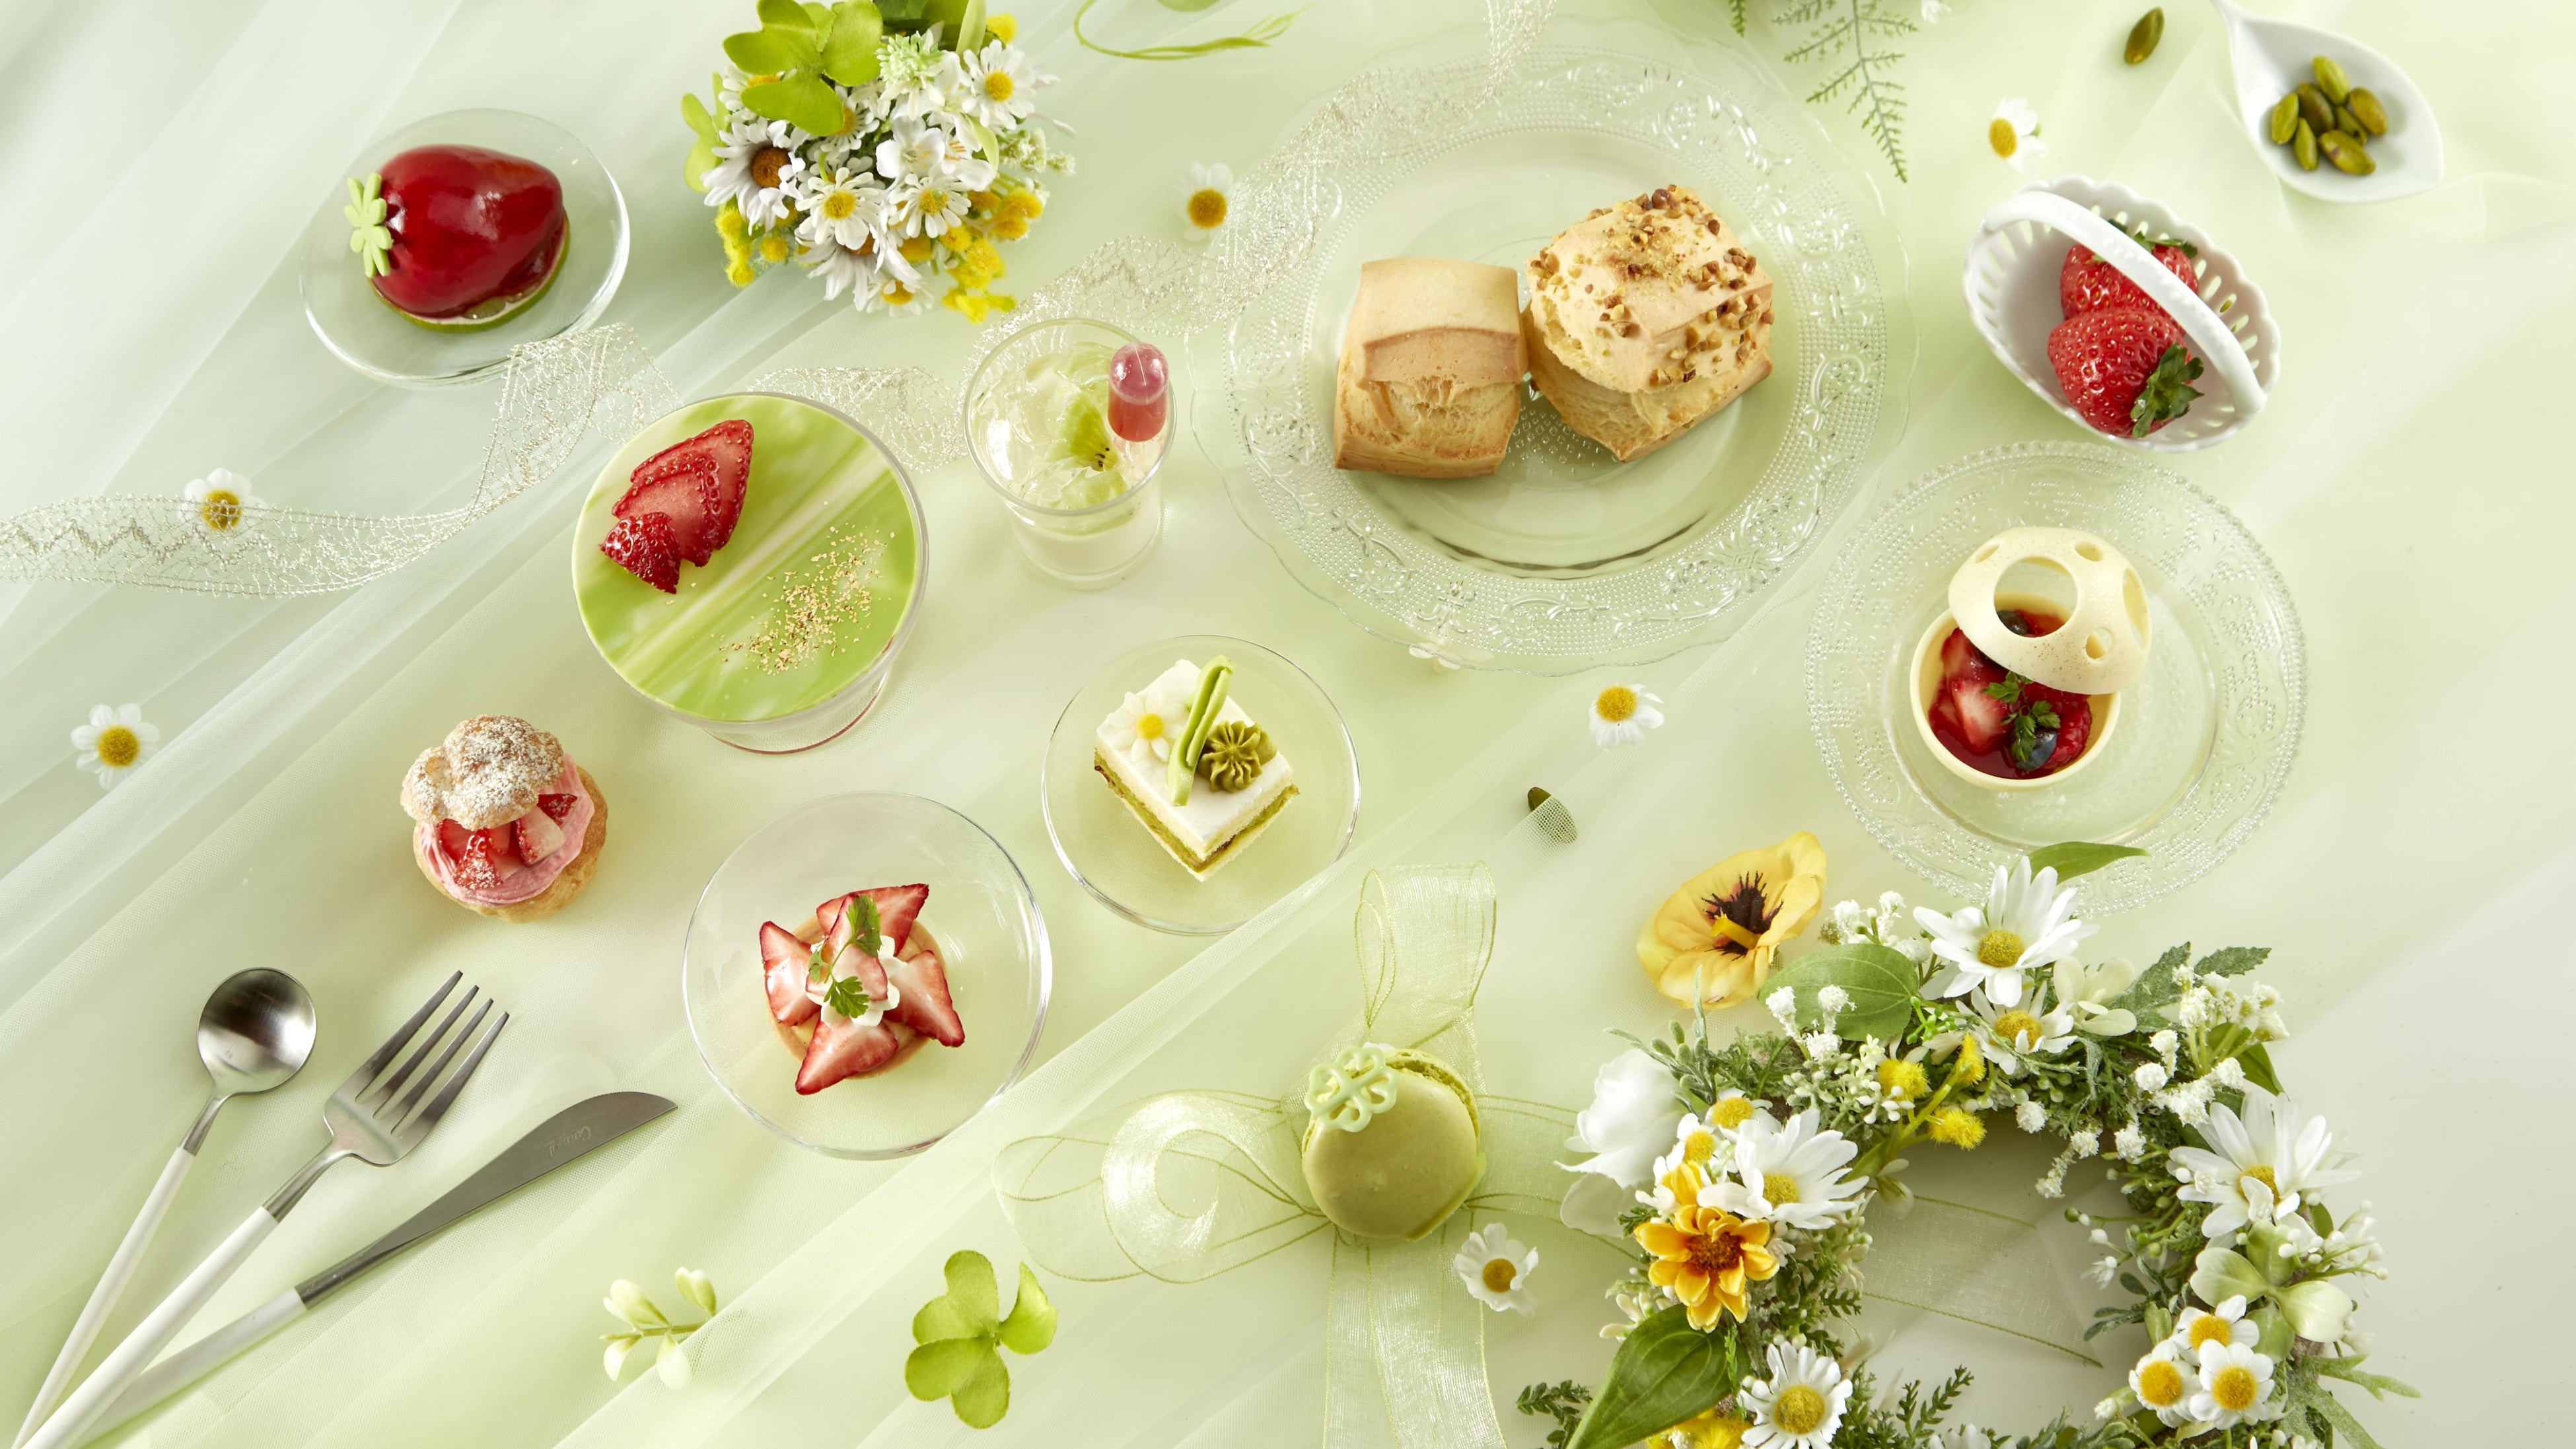 yVhvXzez{̂ґɎgpt̖Ky߂At^k[eB[uStrawberry Afternoon Tea `Spring Garden`v̔